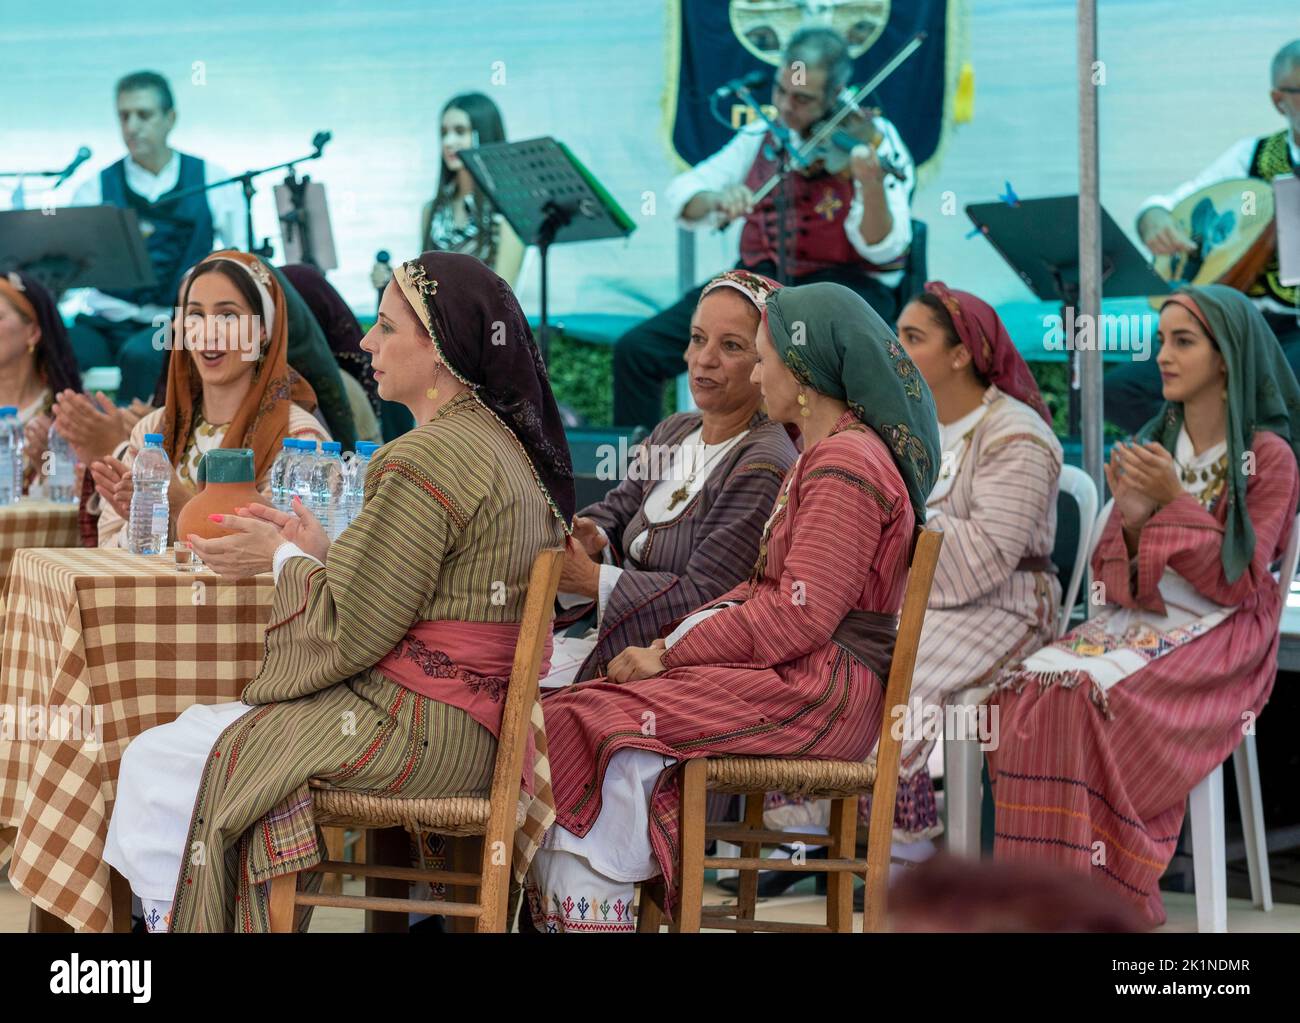 Les Cypriotes en costume traditionnel regardent des artistes au Festival rural Statos-Agios Fotios, région de Paphos, Chypre. Banque D'Images